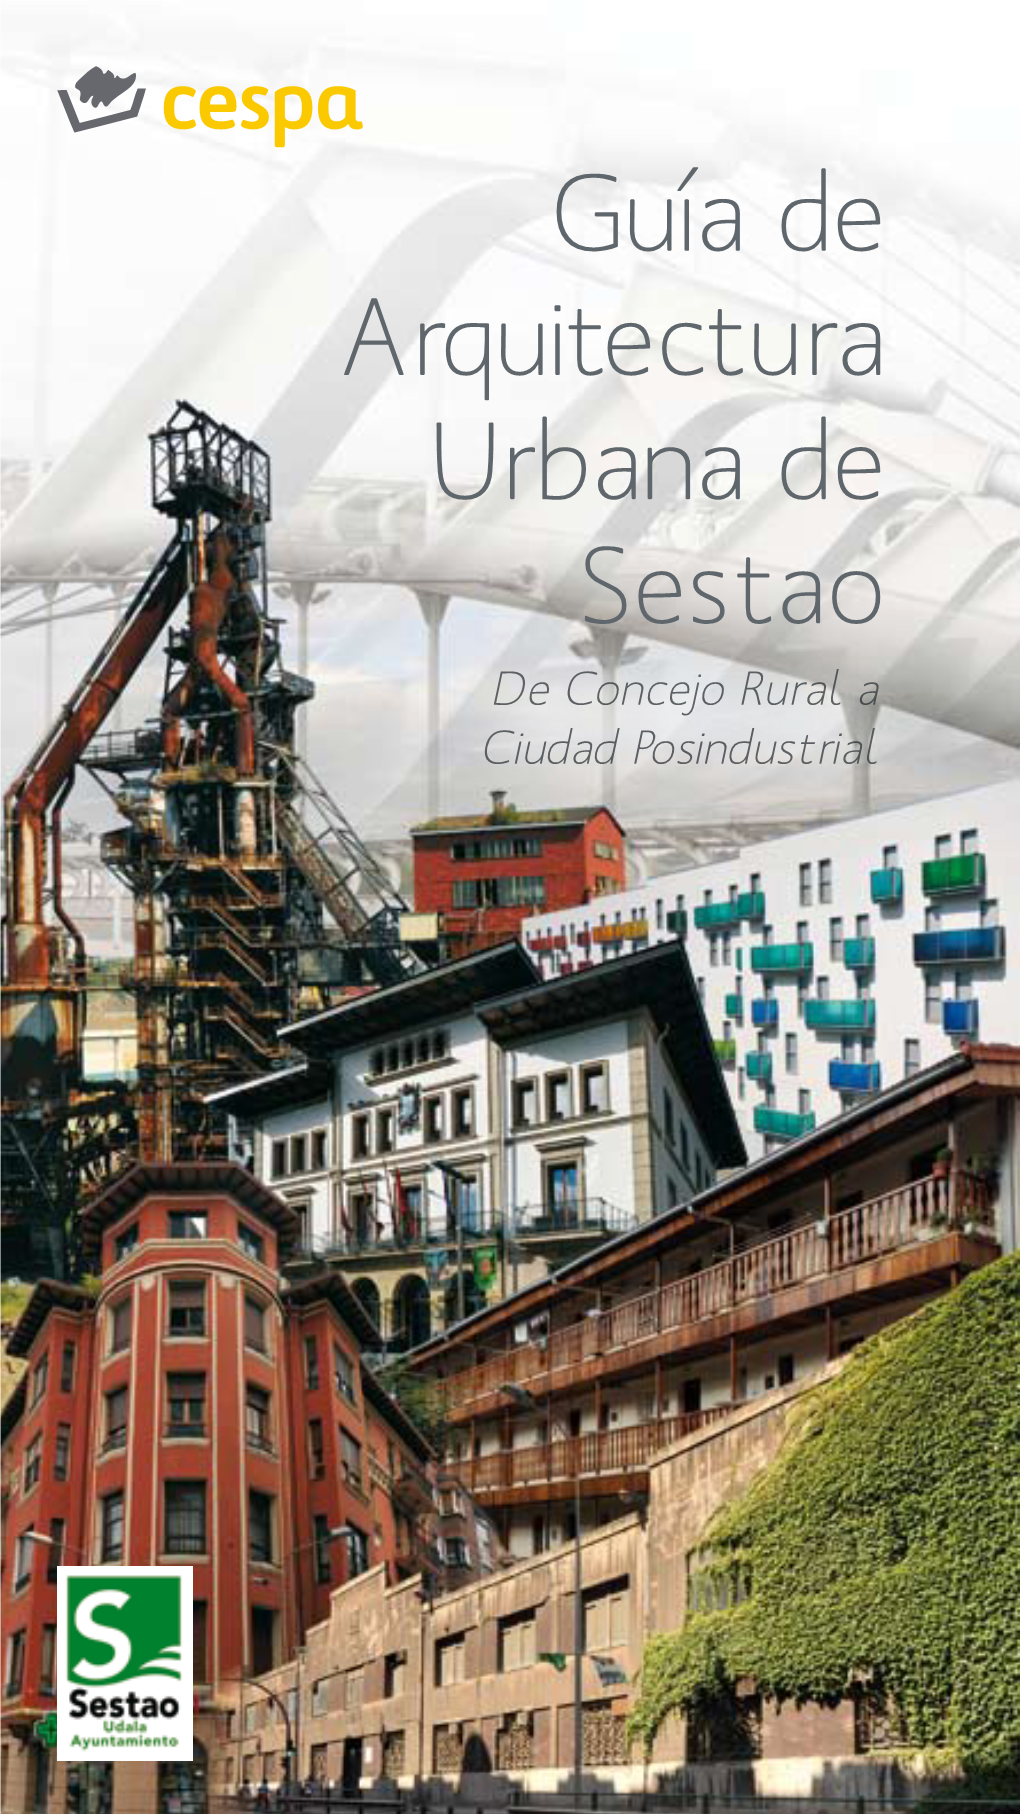 Guía De Arquitectura Urbana De Sestao De Concejo Rural a Ciudad Posindustrial Grupo Publicitario Cruzial, S.L